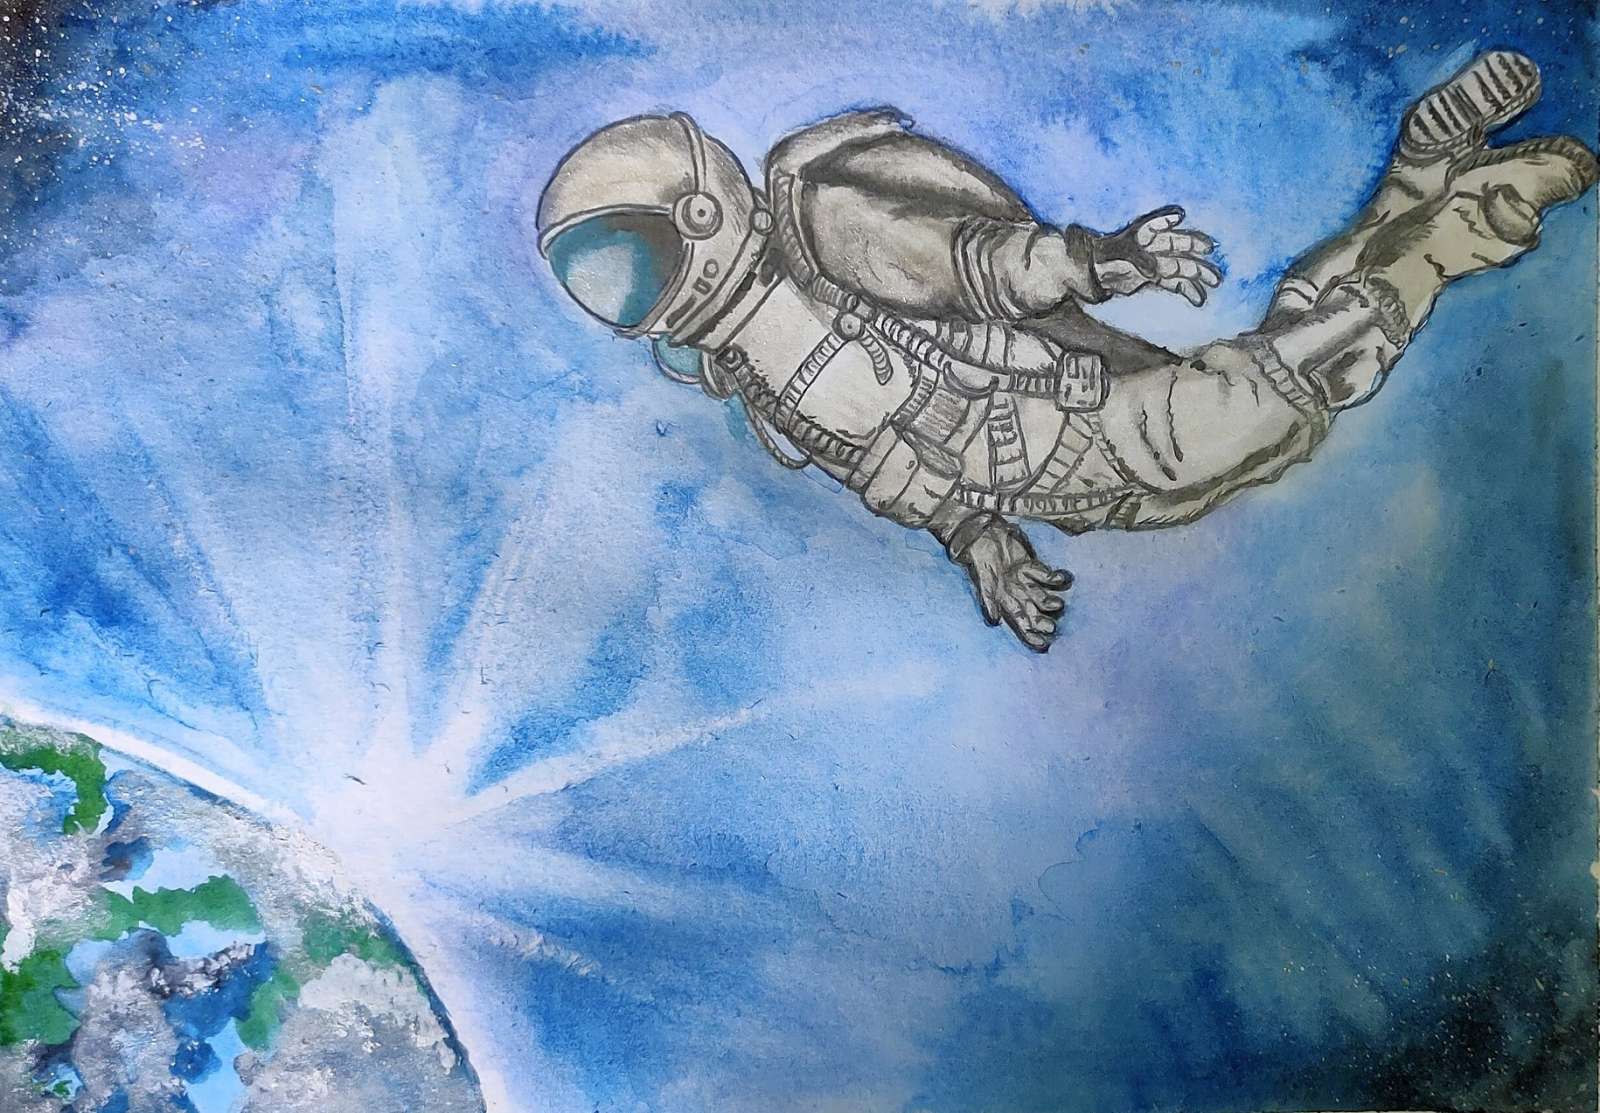 Картины леонова о космосе